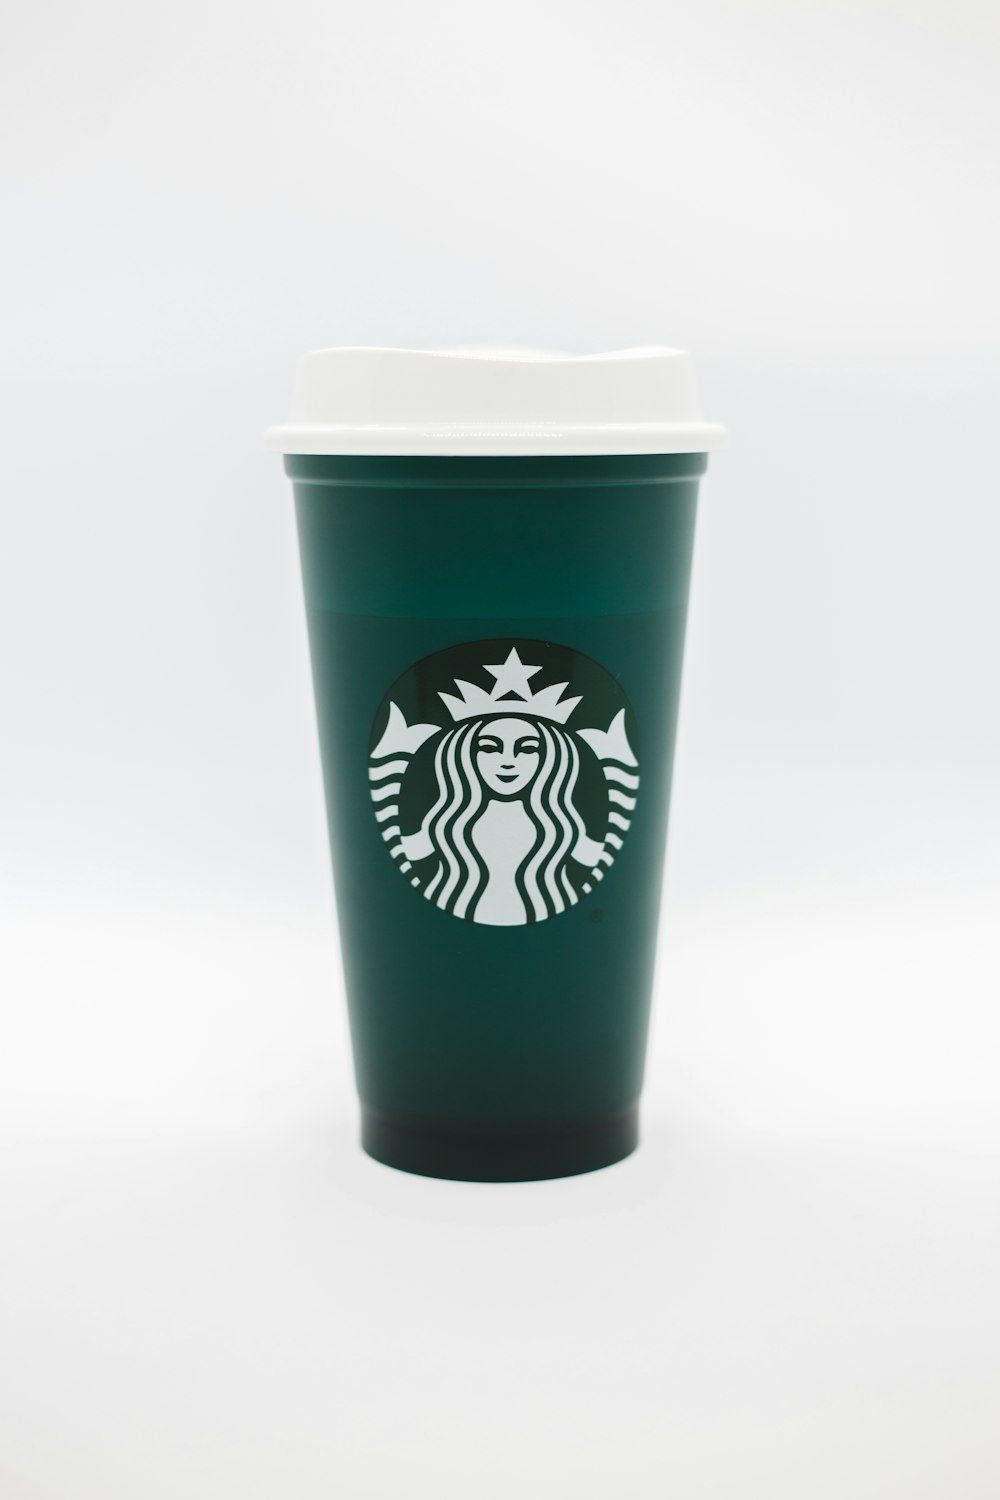 Tasse De Starbucks Photos | Télécharger des images gratuites sur Unsplash